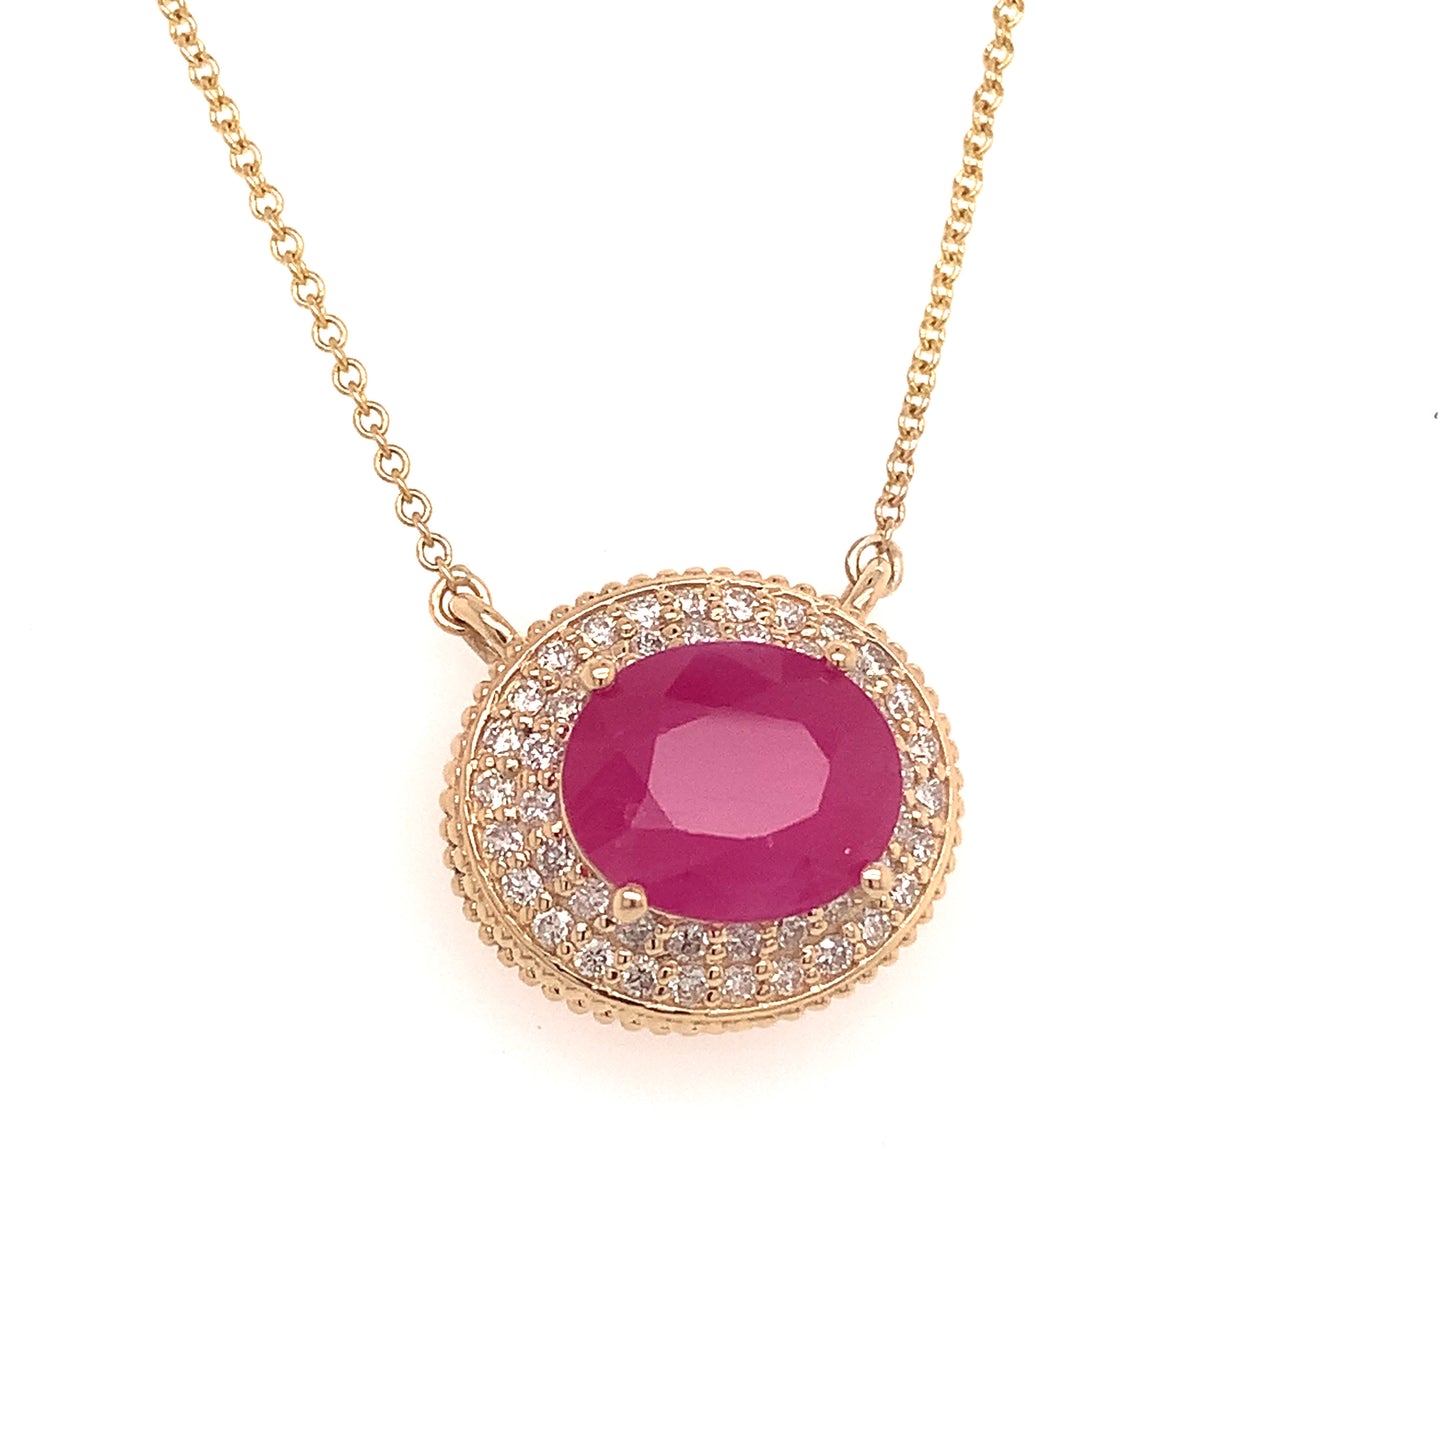 Ruby Diamond Necklace 14k Gold 18" 5.06 TCW Certified $5,975 121097 - Certified Fine Jewelry